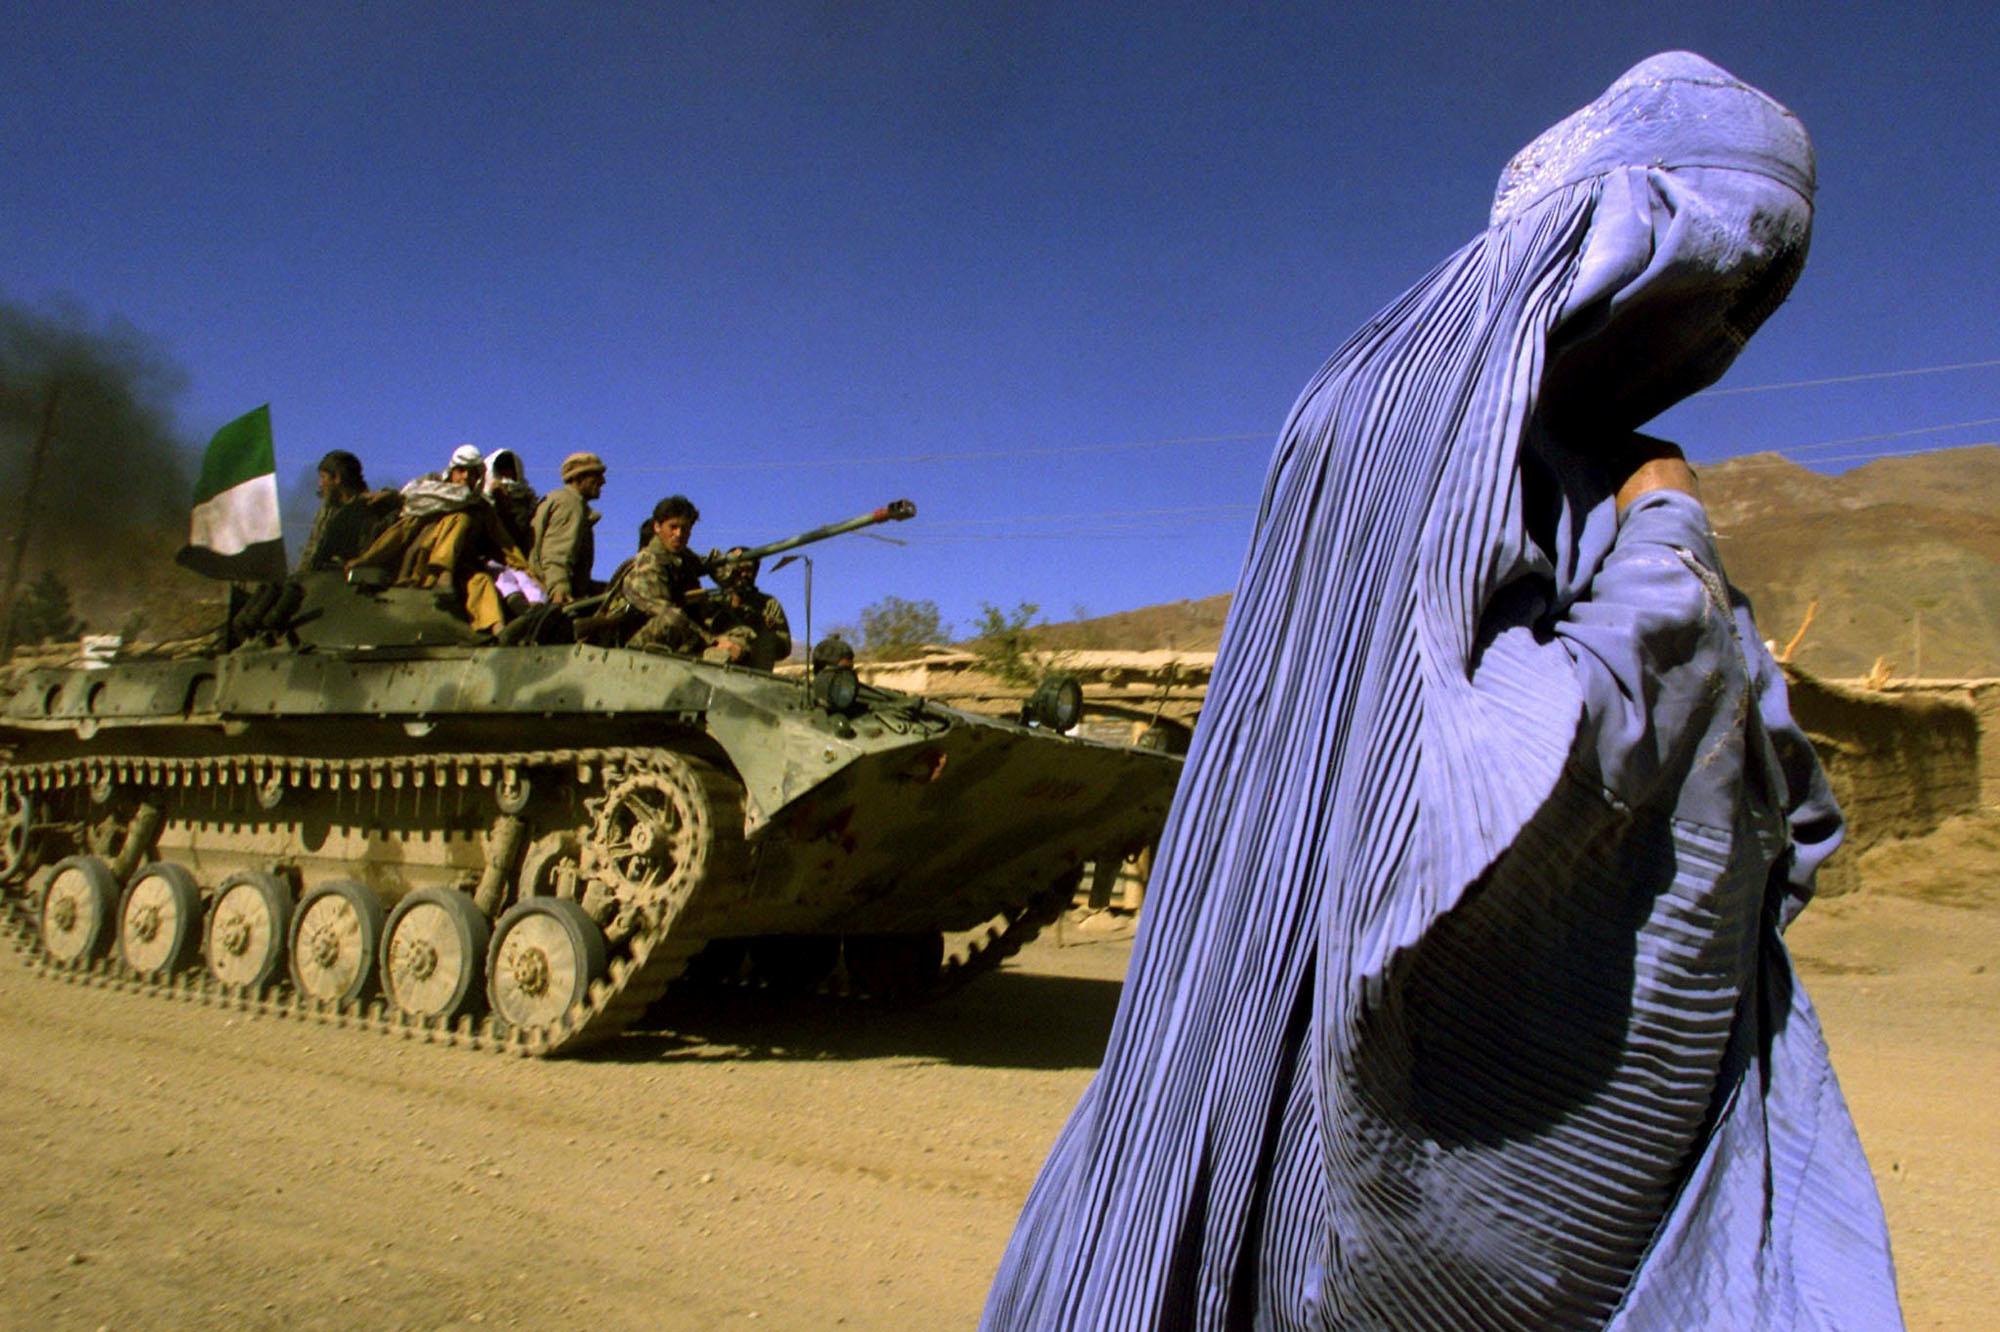 4 novembre 2001 : une Afghane portant une burqa traditionnelle marche sur le bord d'une route alors qu'un véhicule blindé de l'Alliance du Nord, transportant des combattants et le drapeau afghan, se dirige vers une nouvelle position dans la périphérie de Jabal us Seraj, à environ 60 km au nord de la capitale afghane Kaboul.